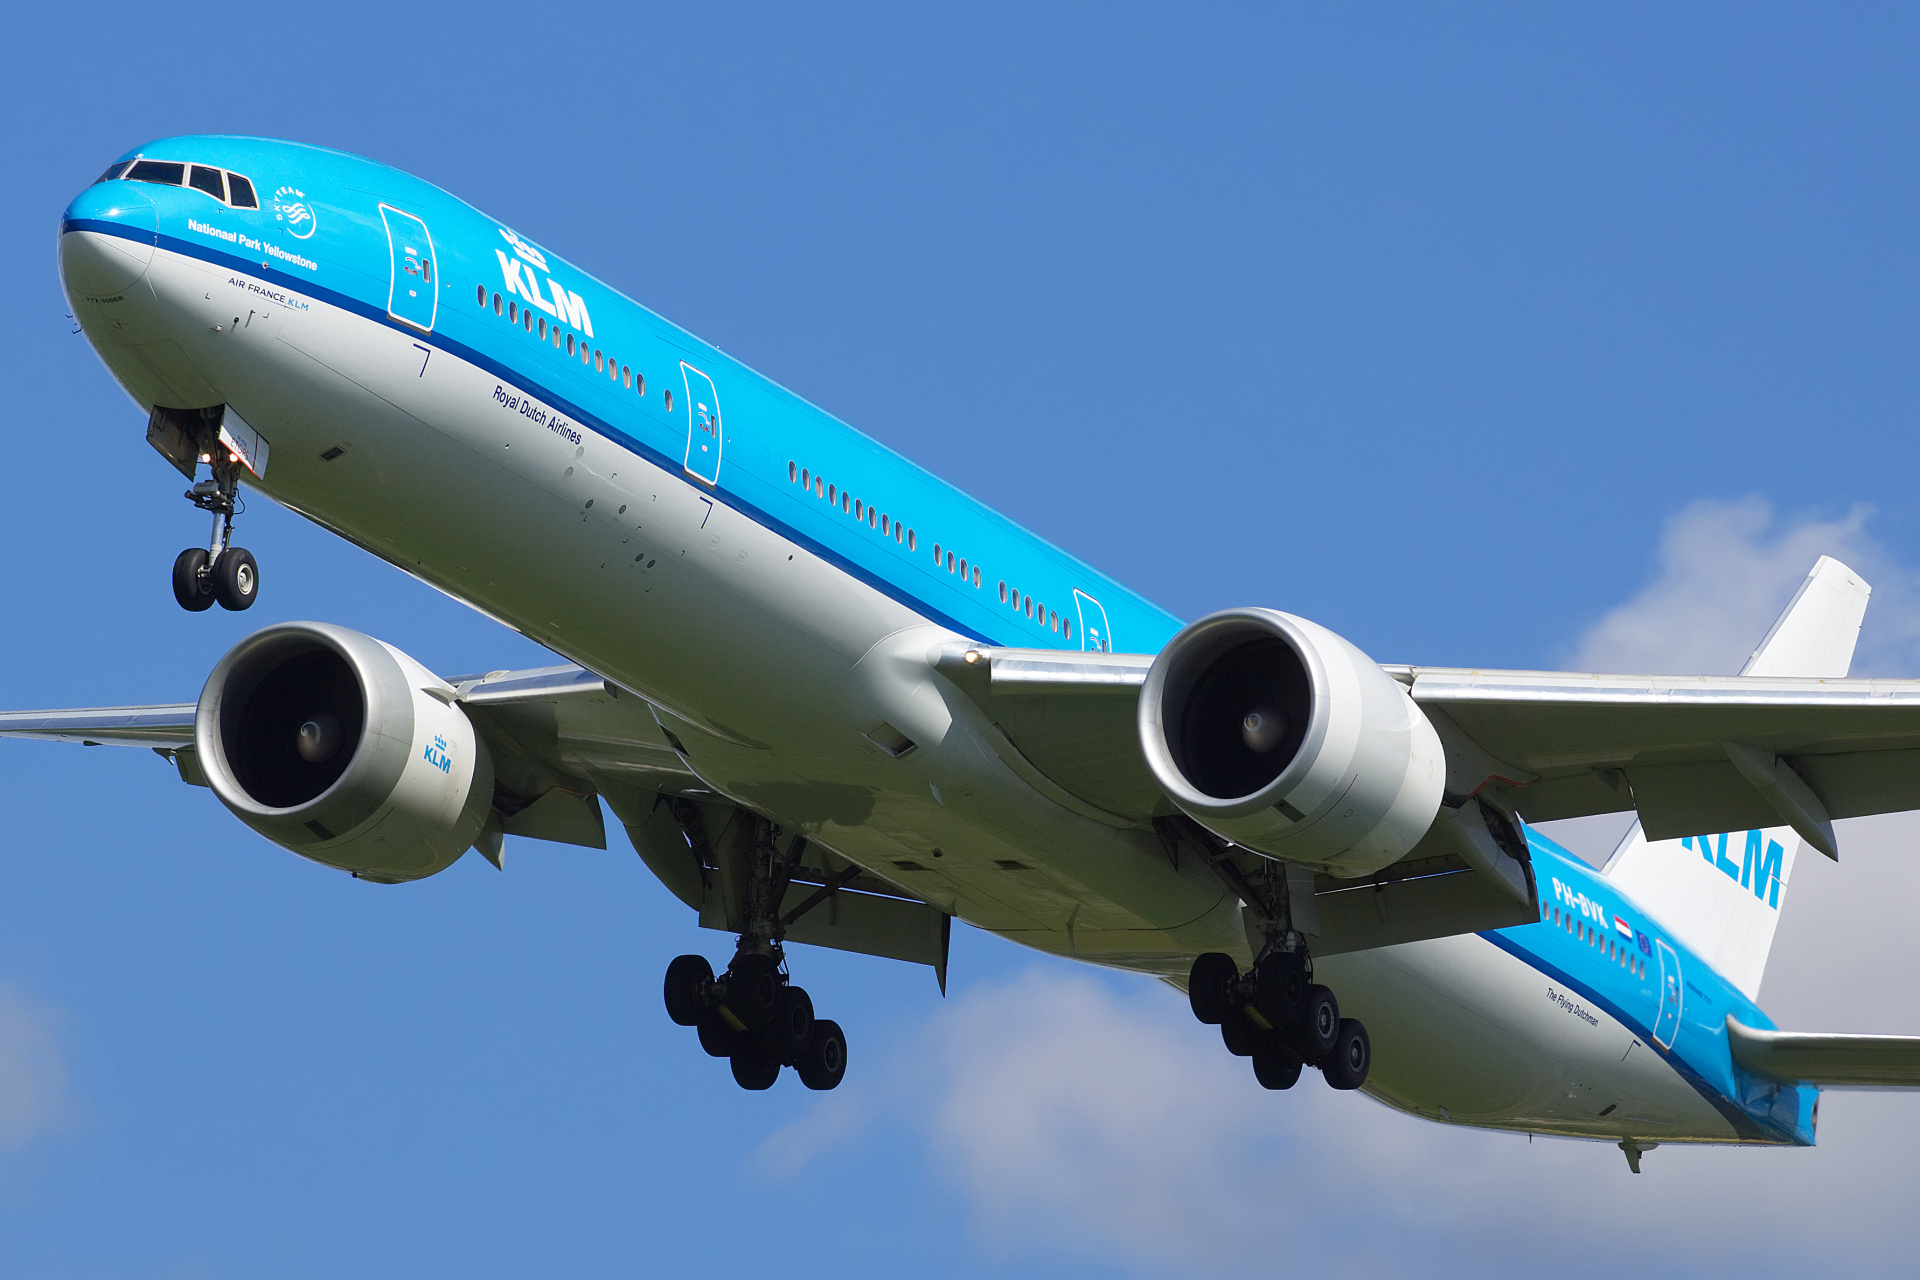 PH-BVK (Aircraft » Schiphol Spotting » Boeing 777-300ER » KLM Royal Dutch Airlines)